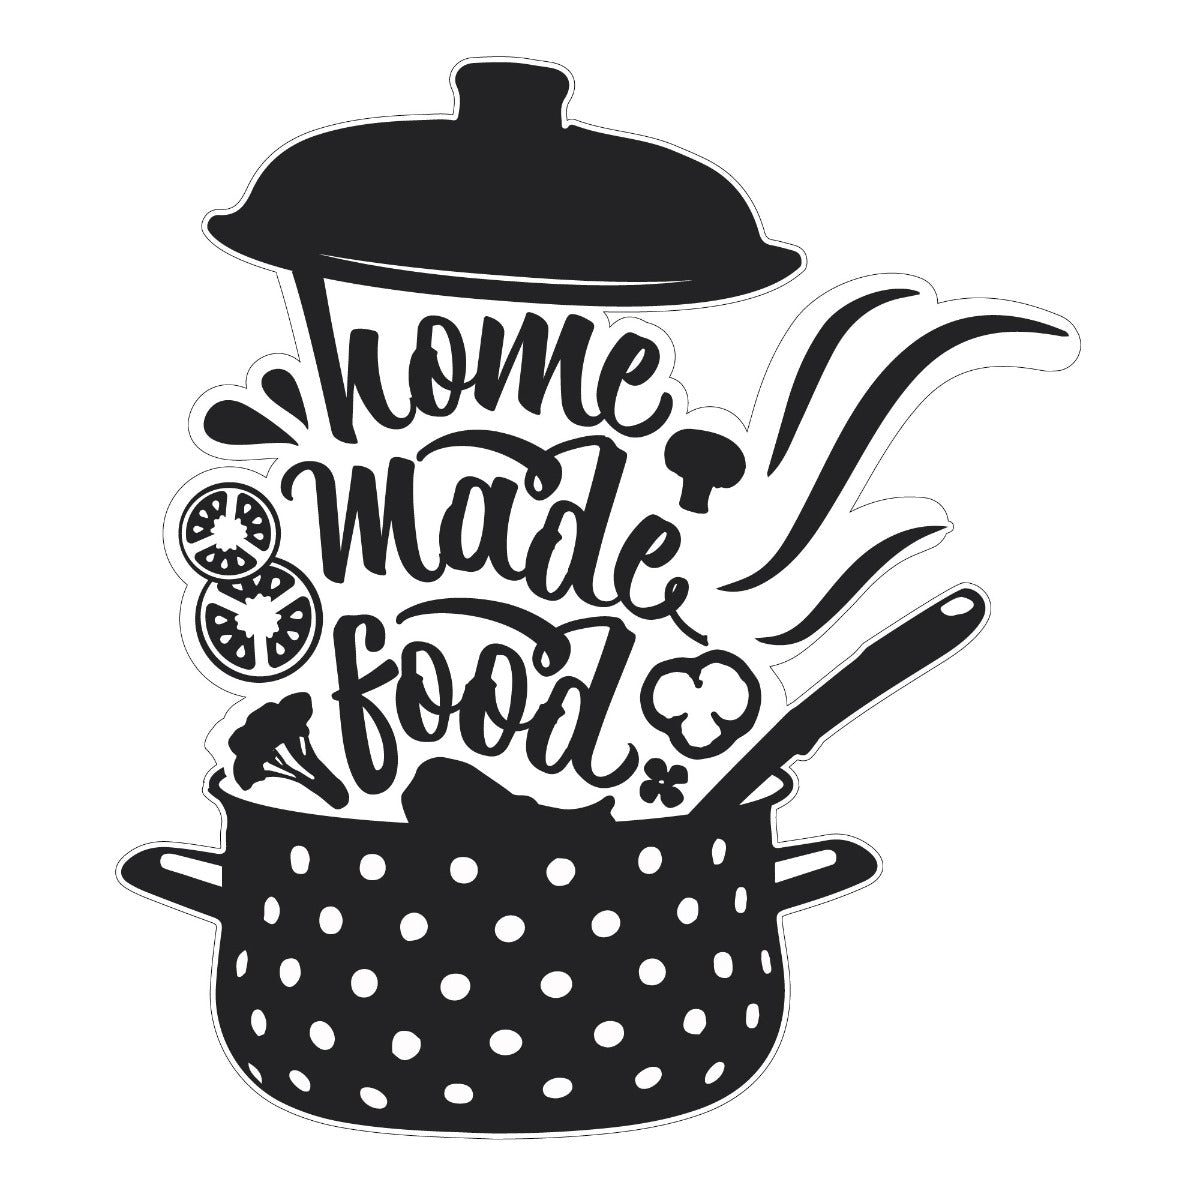 Kitchen Wall Sticker - Home Made Food Crock Pot